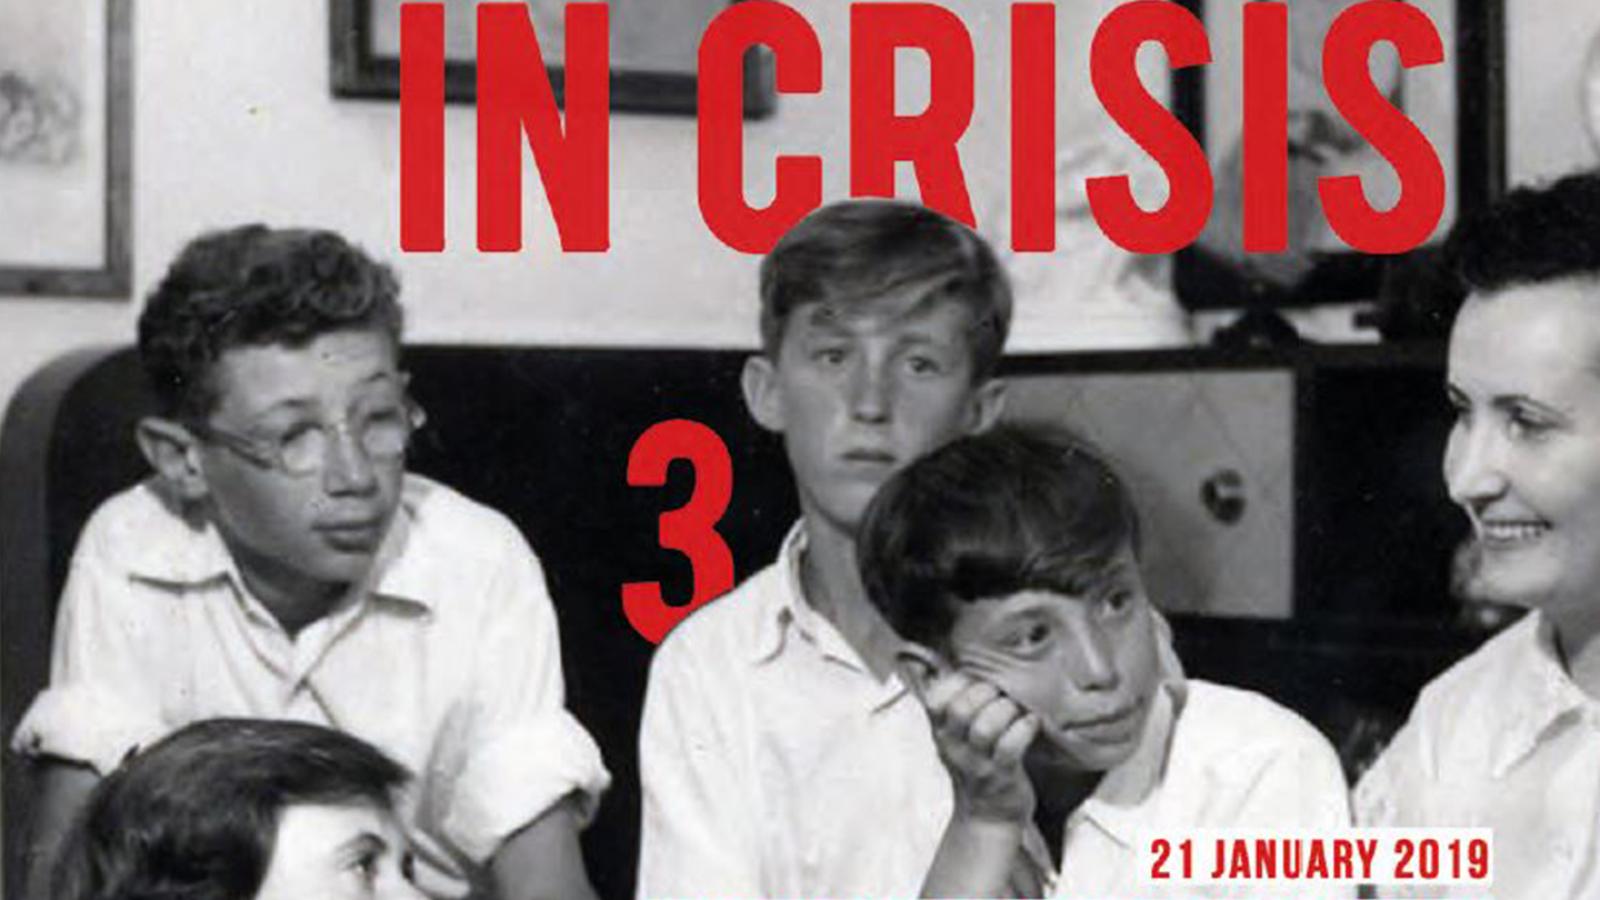 Schwarz-Weiß-Bild von mehreren Kindern, die zusammensitzen. Darauf in rot die Schrift "Children in Crisis".